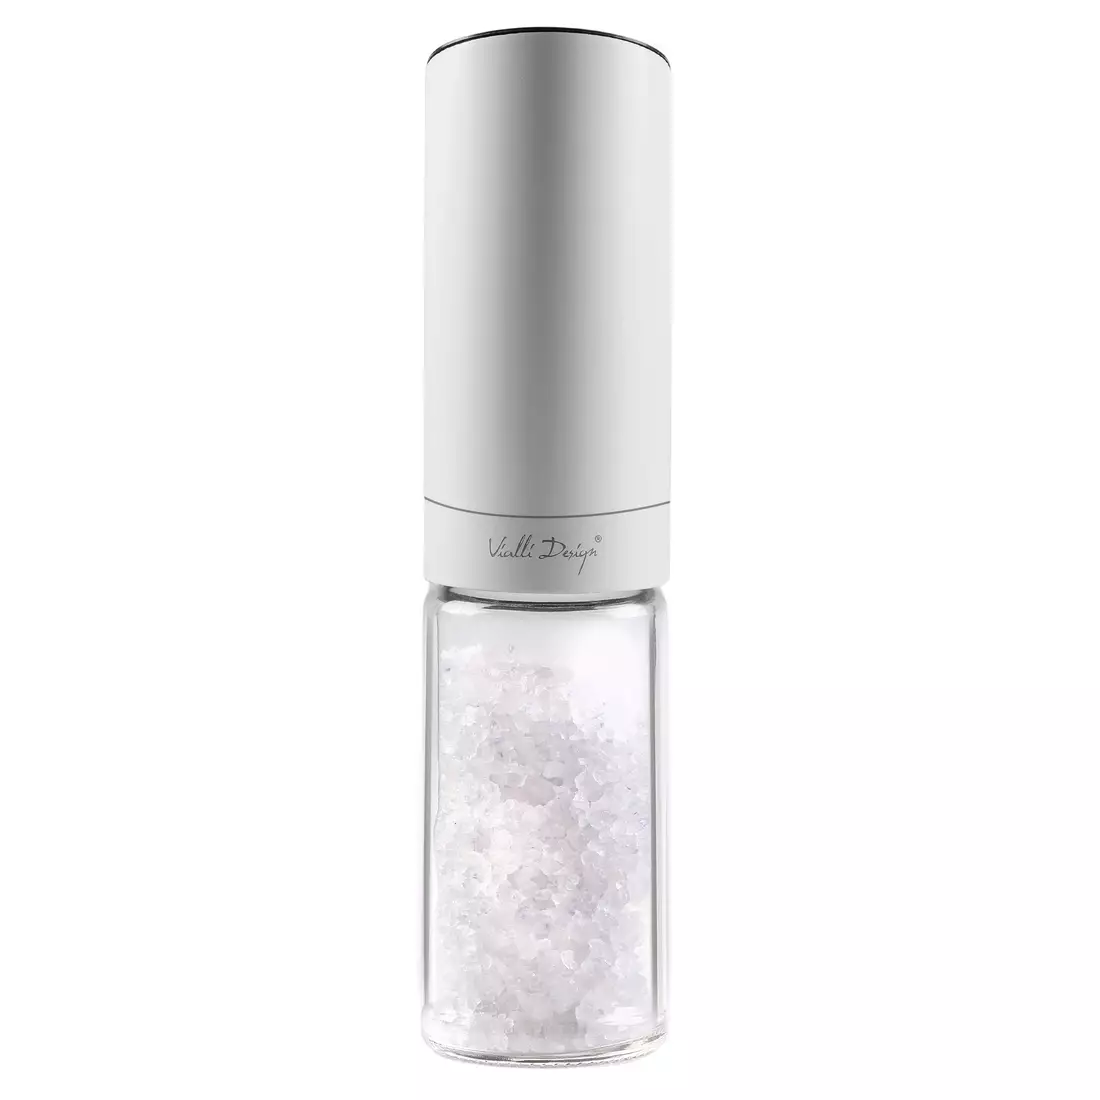 VIALLI DESIGN SOHO Elektrische Salz- und Pfeffermühle aus Schwerkraftstahl Weiß